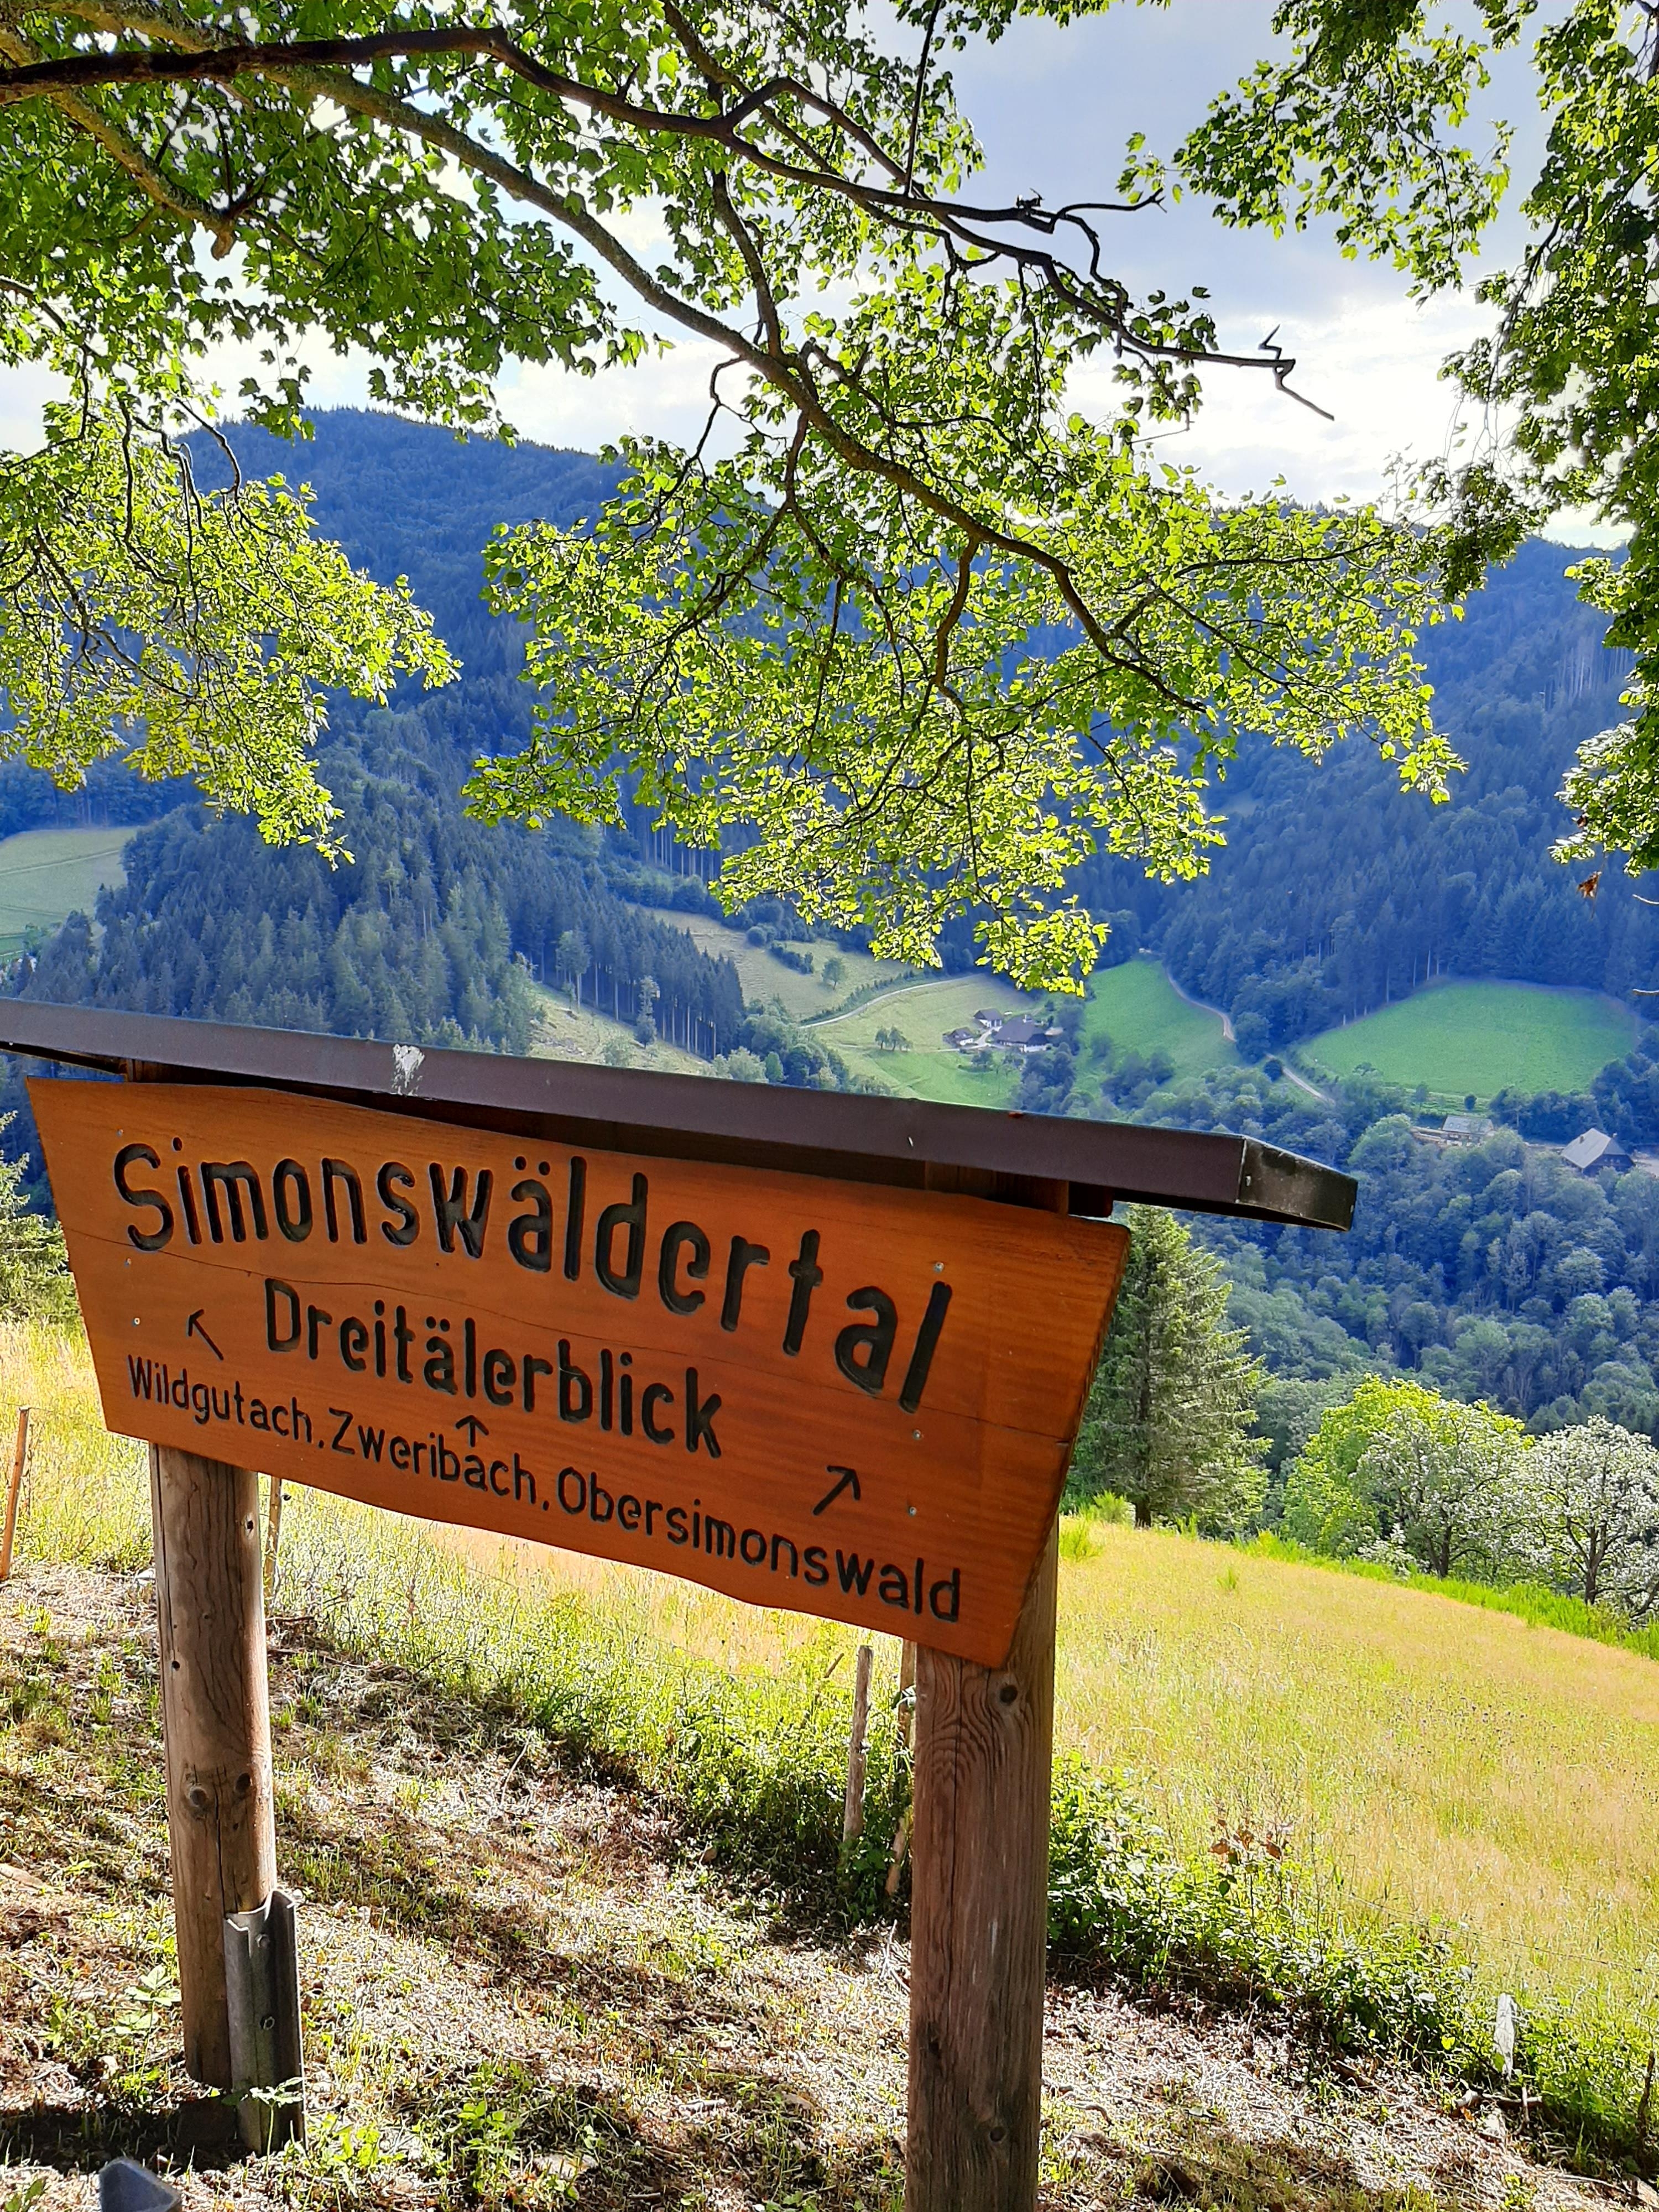 Ab in die Natur. 
#Schwarzwald #ausblick #naturliebe 